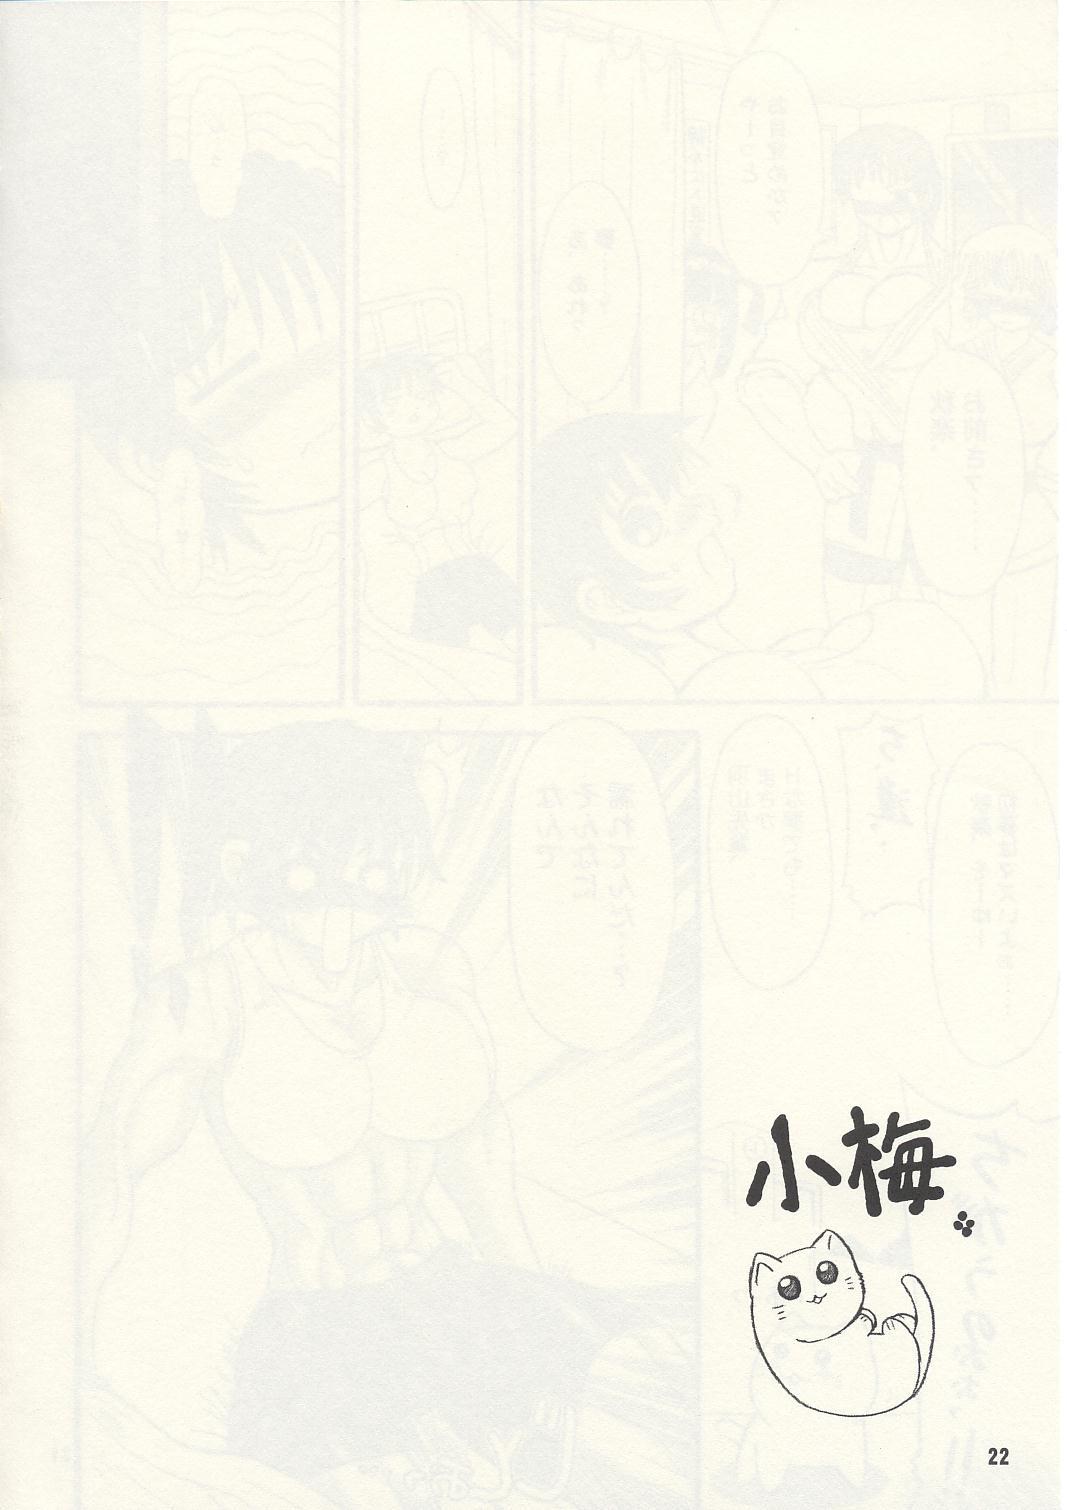 TGWOA Vol.13 - Asia no Taka 20